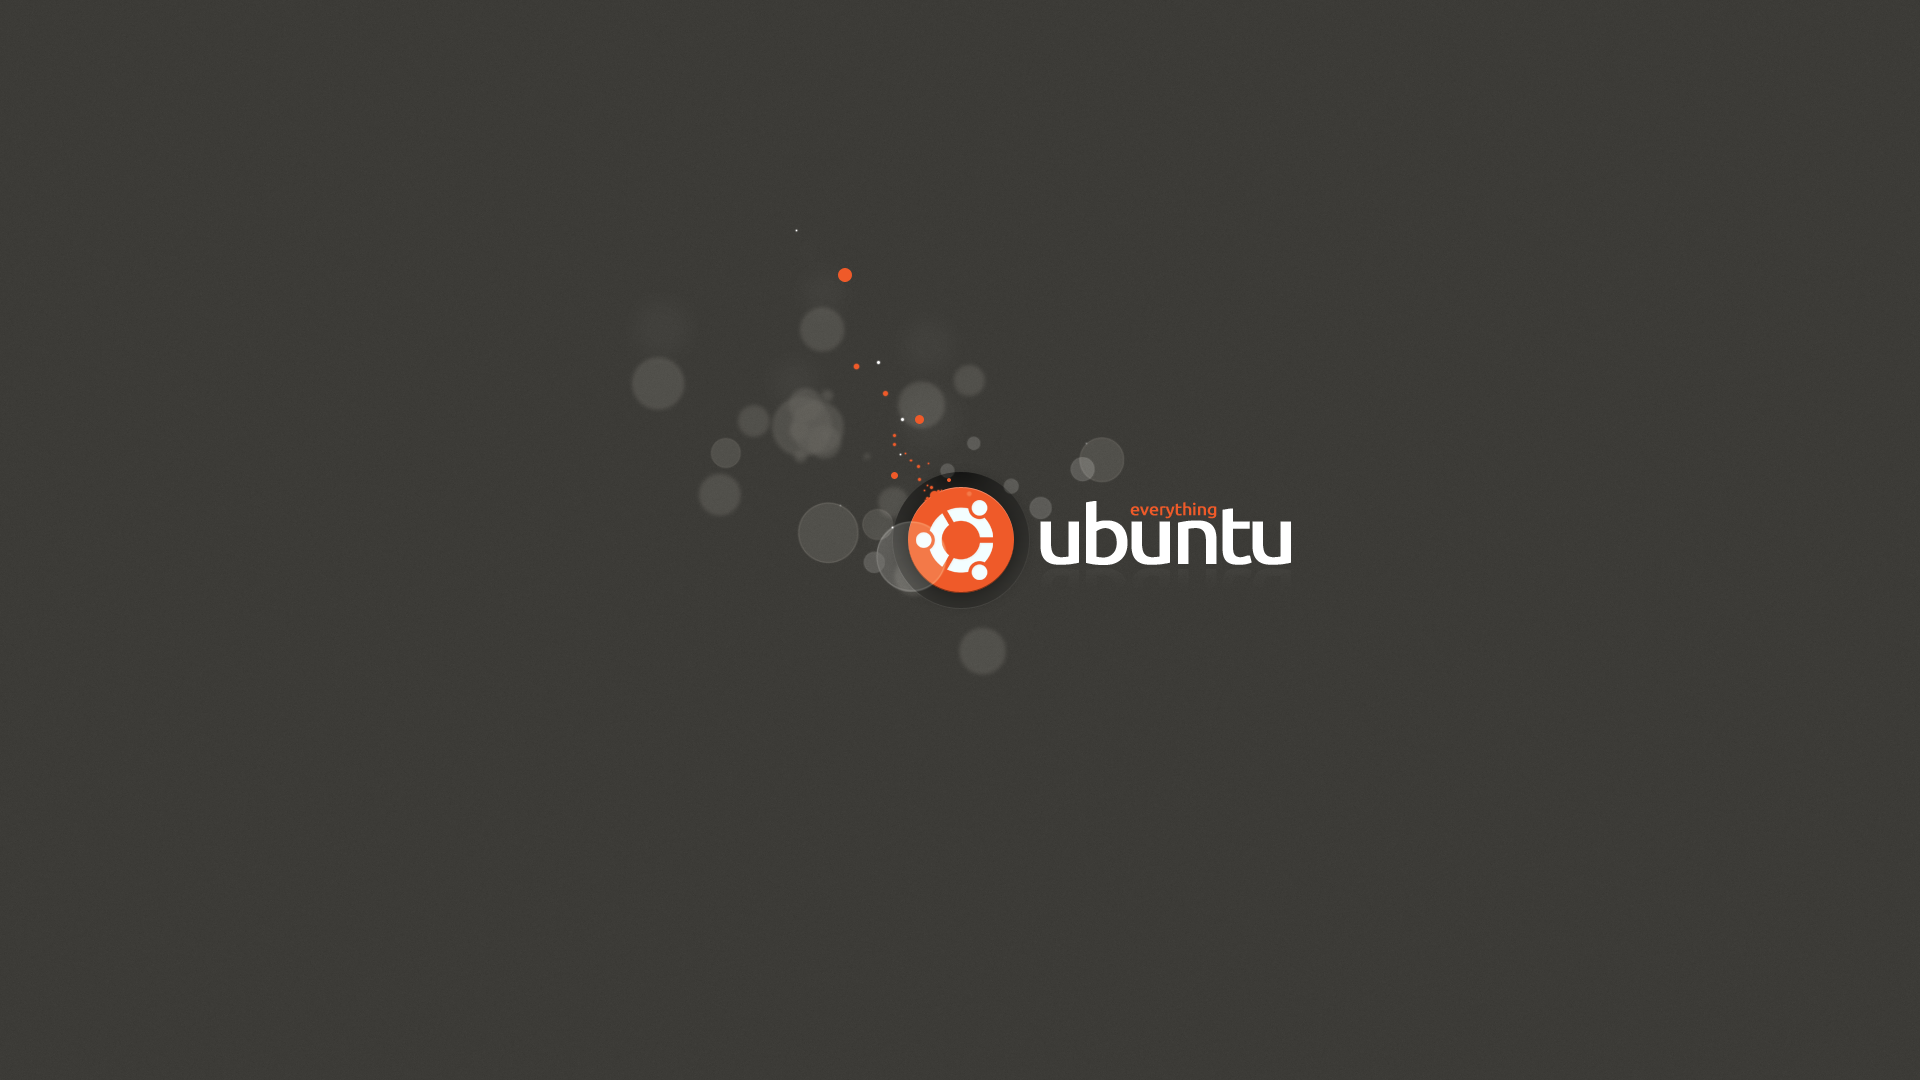 Tải ngay những hình nền Ubuntu đẹp nhất miễn phí để biến không gian làm việc của bạn trở nên hoàn mỹ hơn bao giờ hết. Với những gam màu tươi sáng và hiệu ứng động đẹp mắt, góp phần mang đến cảm giác sảng khoái và tập trung cho việc làm.